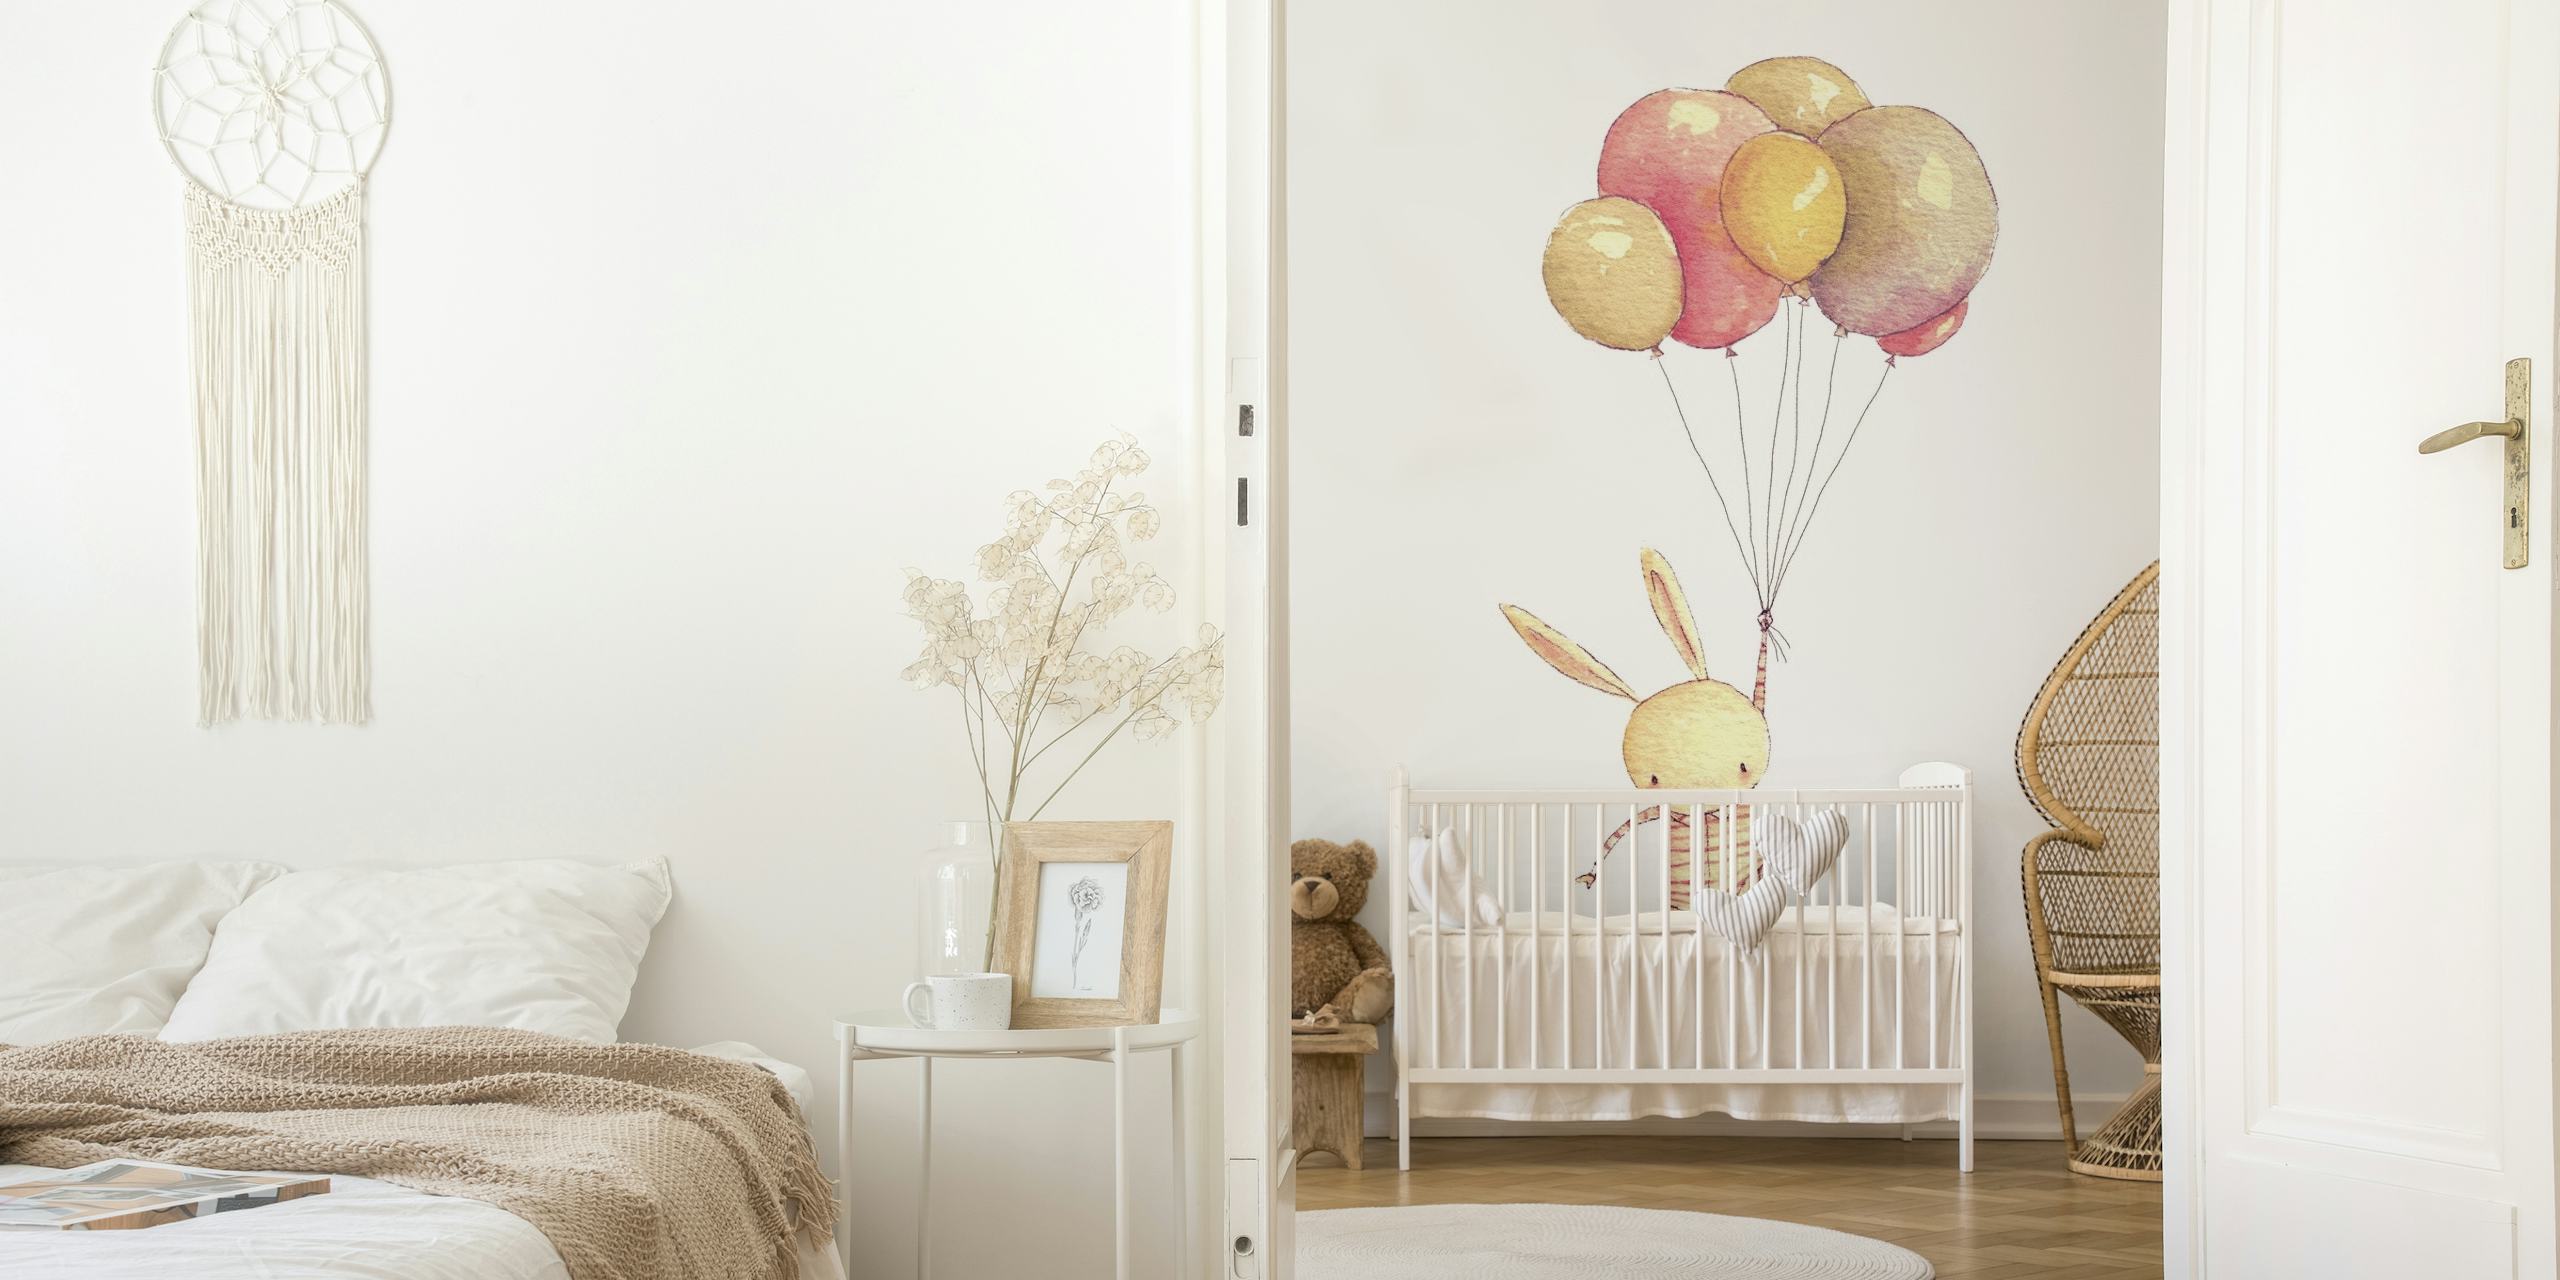 Illustration eines Hasen, der an pastellfarbene Luftballons gebunden ist, die in einem Wandgemälde nach oben schweben.